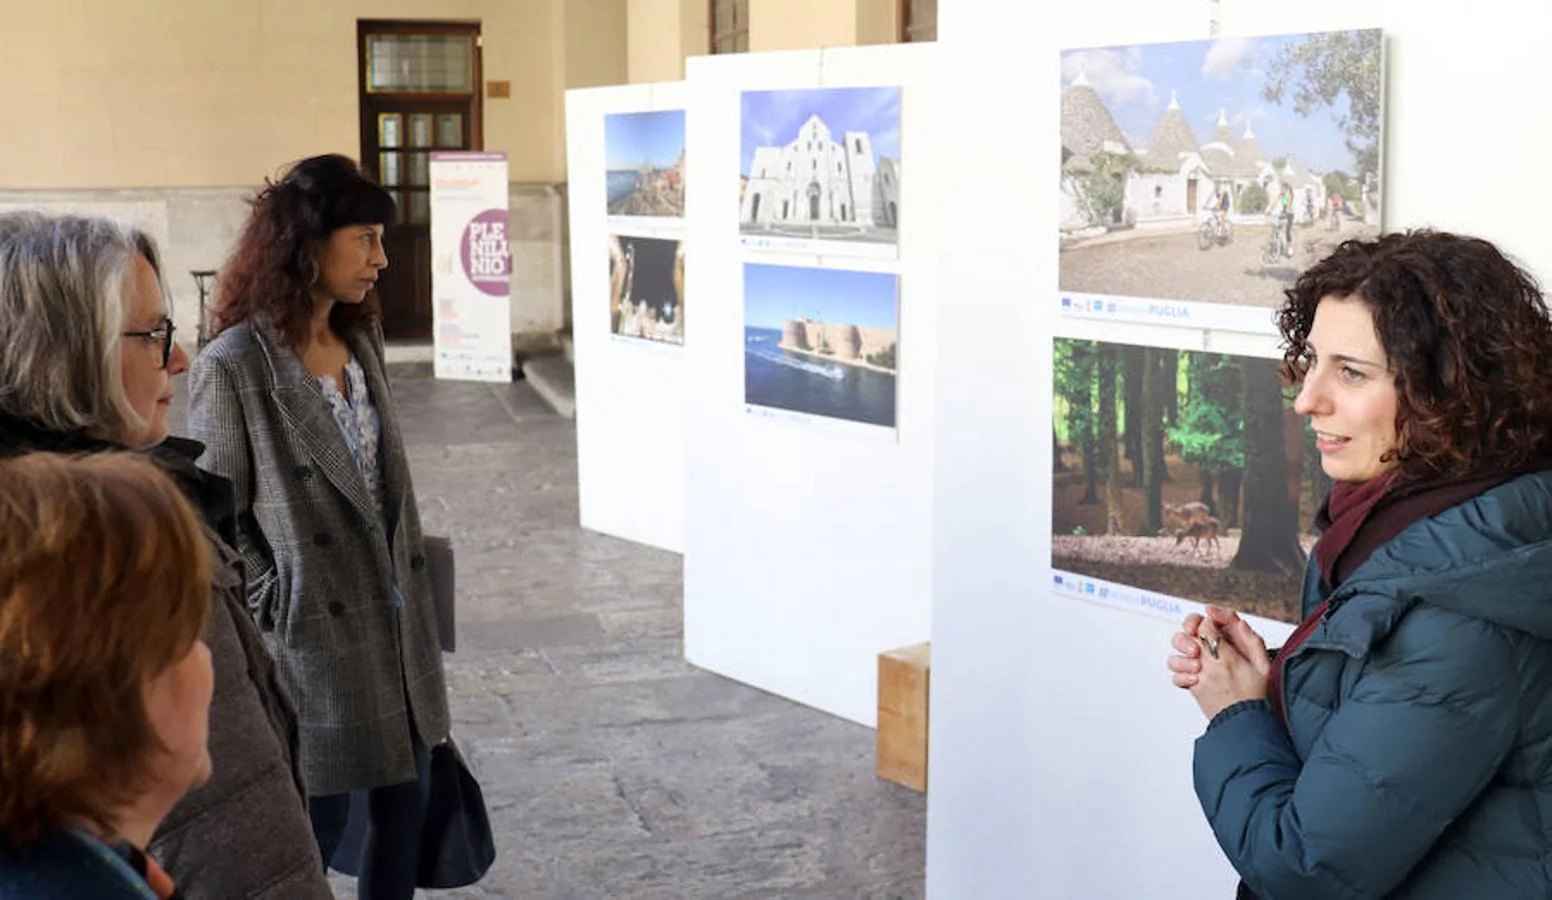 El patio del Palacio Real de Valladolid acoge desde el viernes y hasta el próximo 24 de marzo una exposición fotográfica sobre la Semana Santa de la localidad italiana de Apulia.